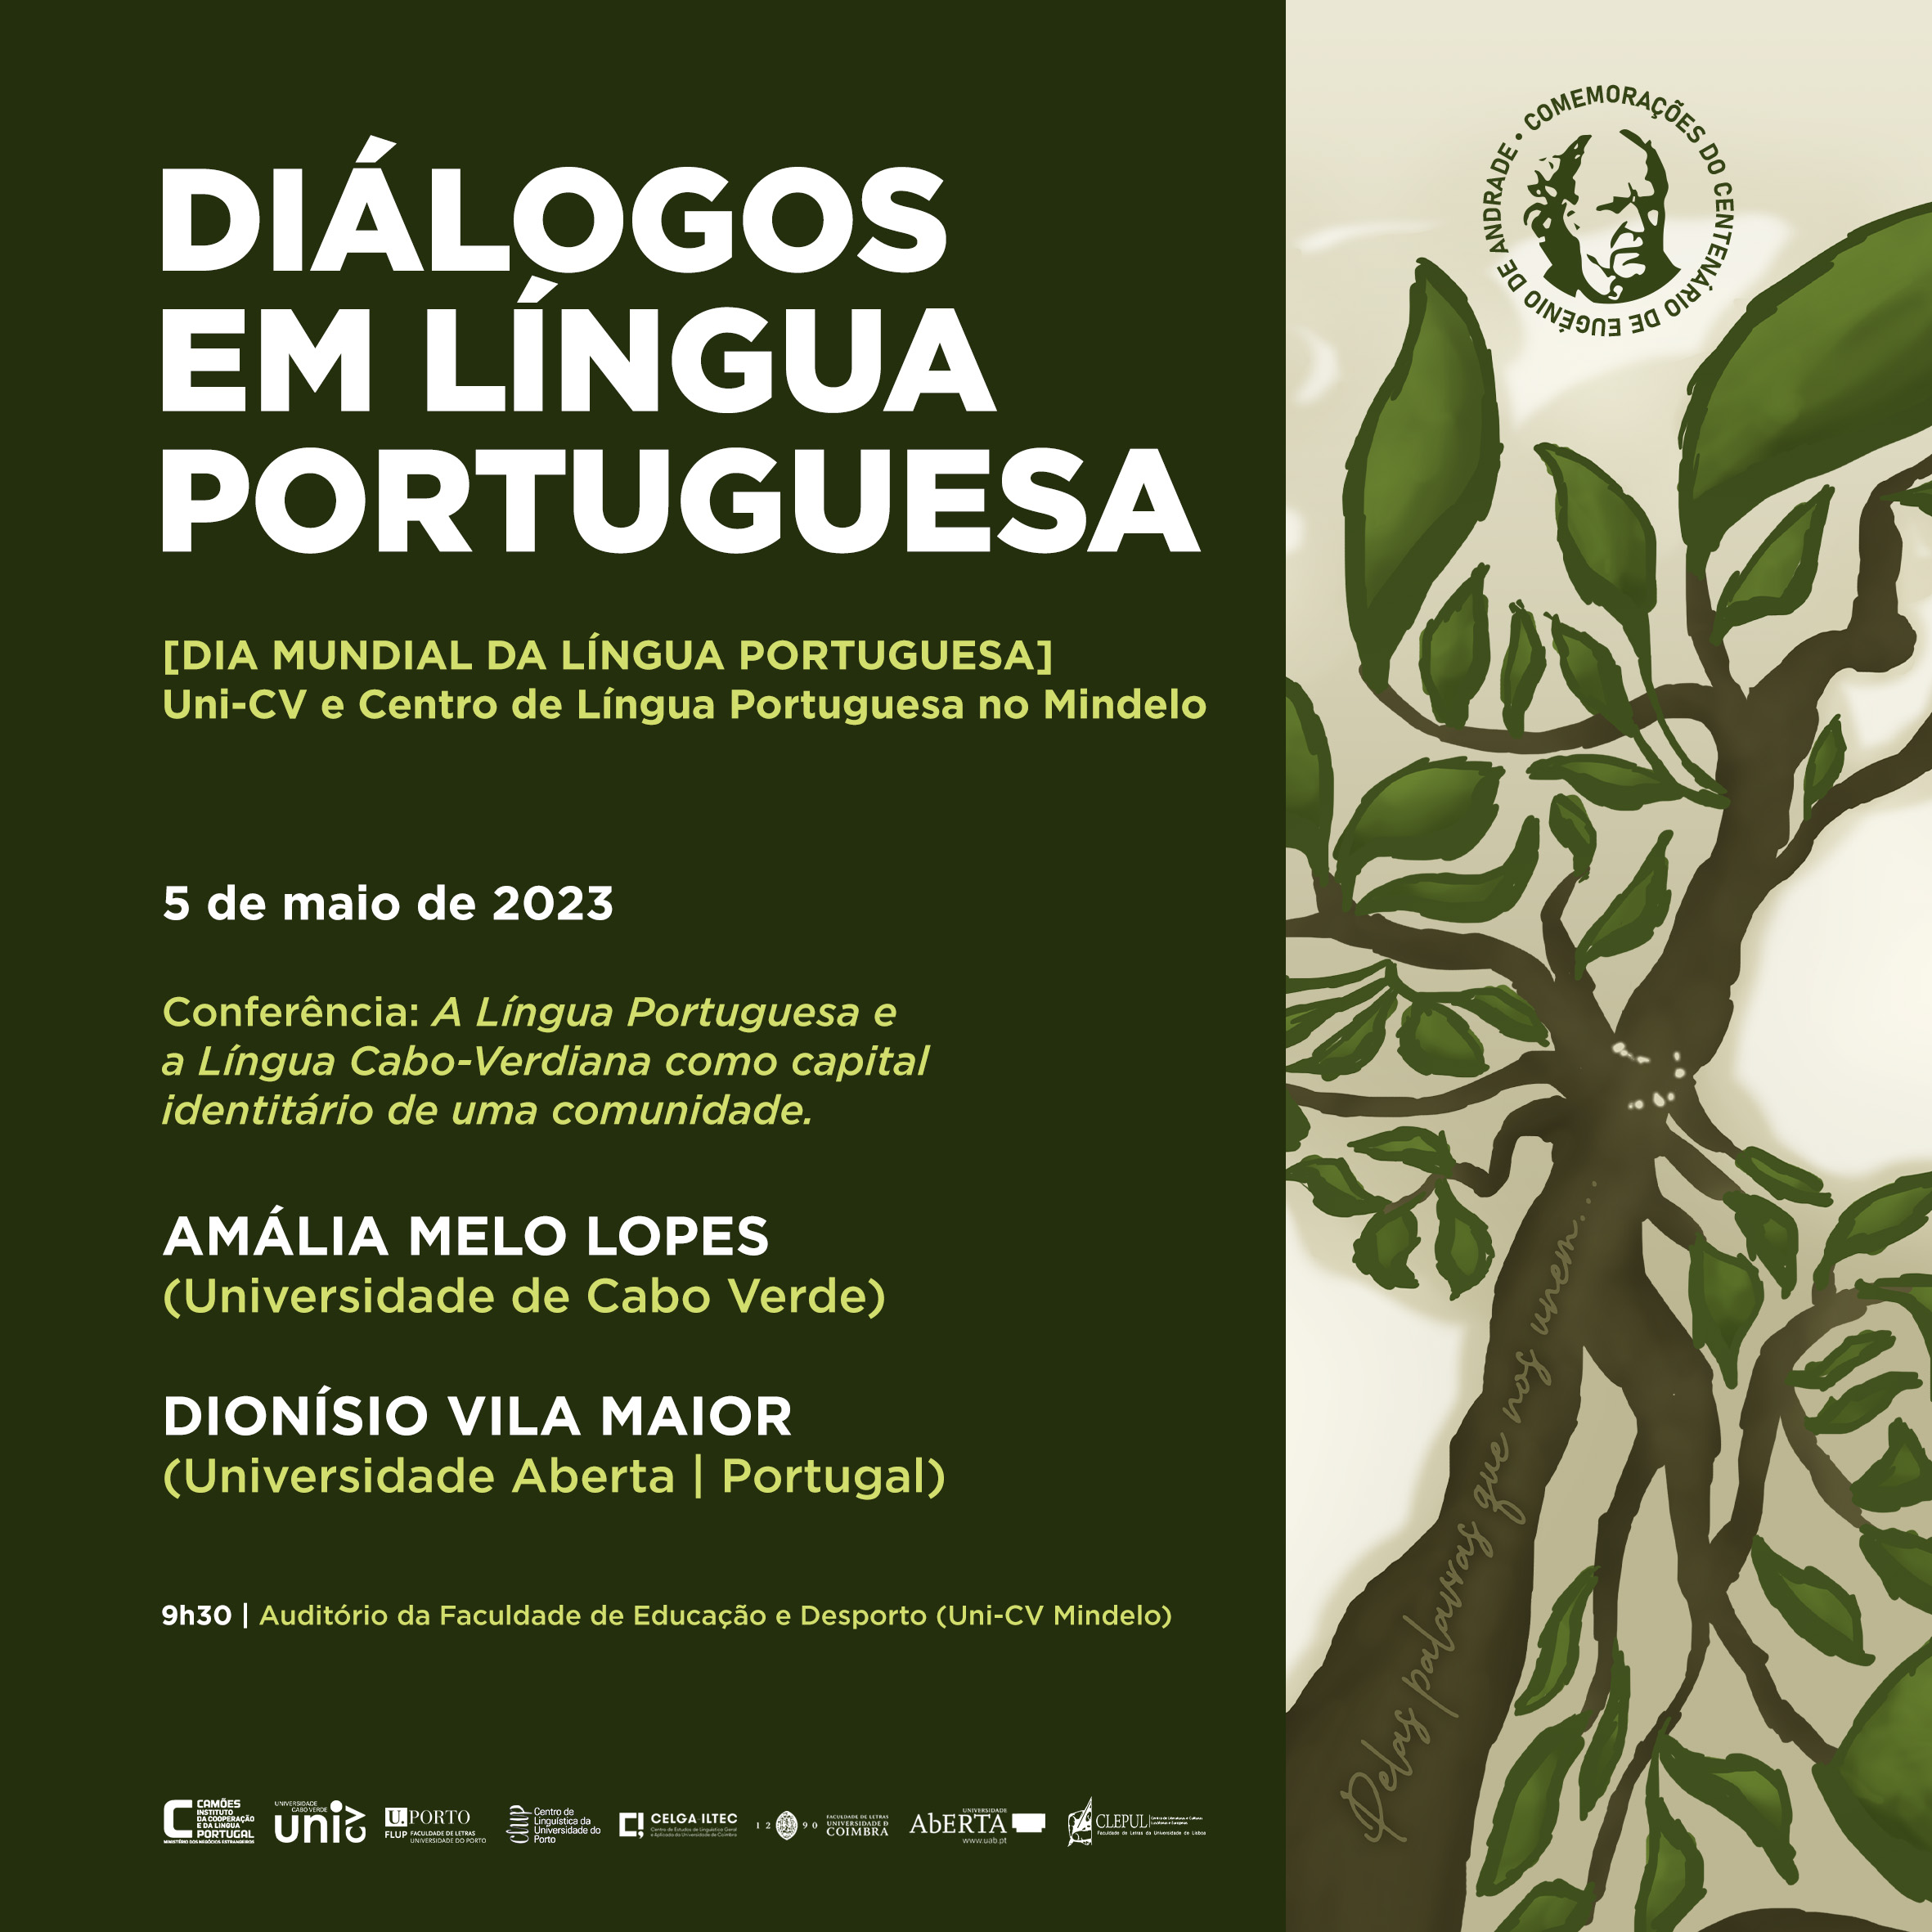 Diálogos_em_Língua_Portuguesa_-_Conferência_5_de_maio.jpg